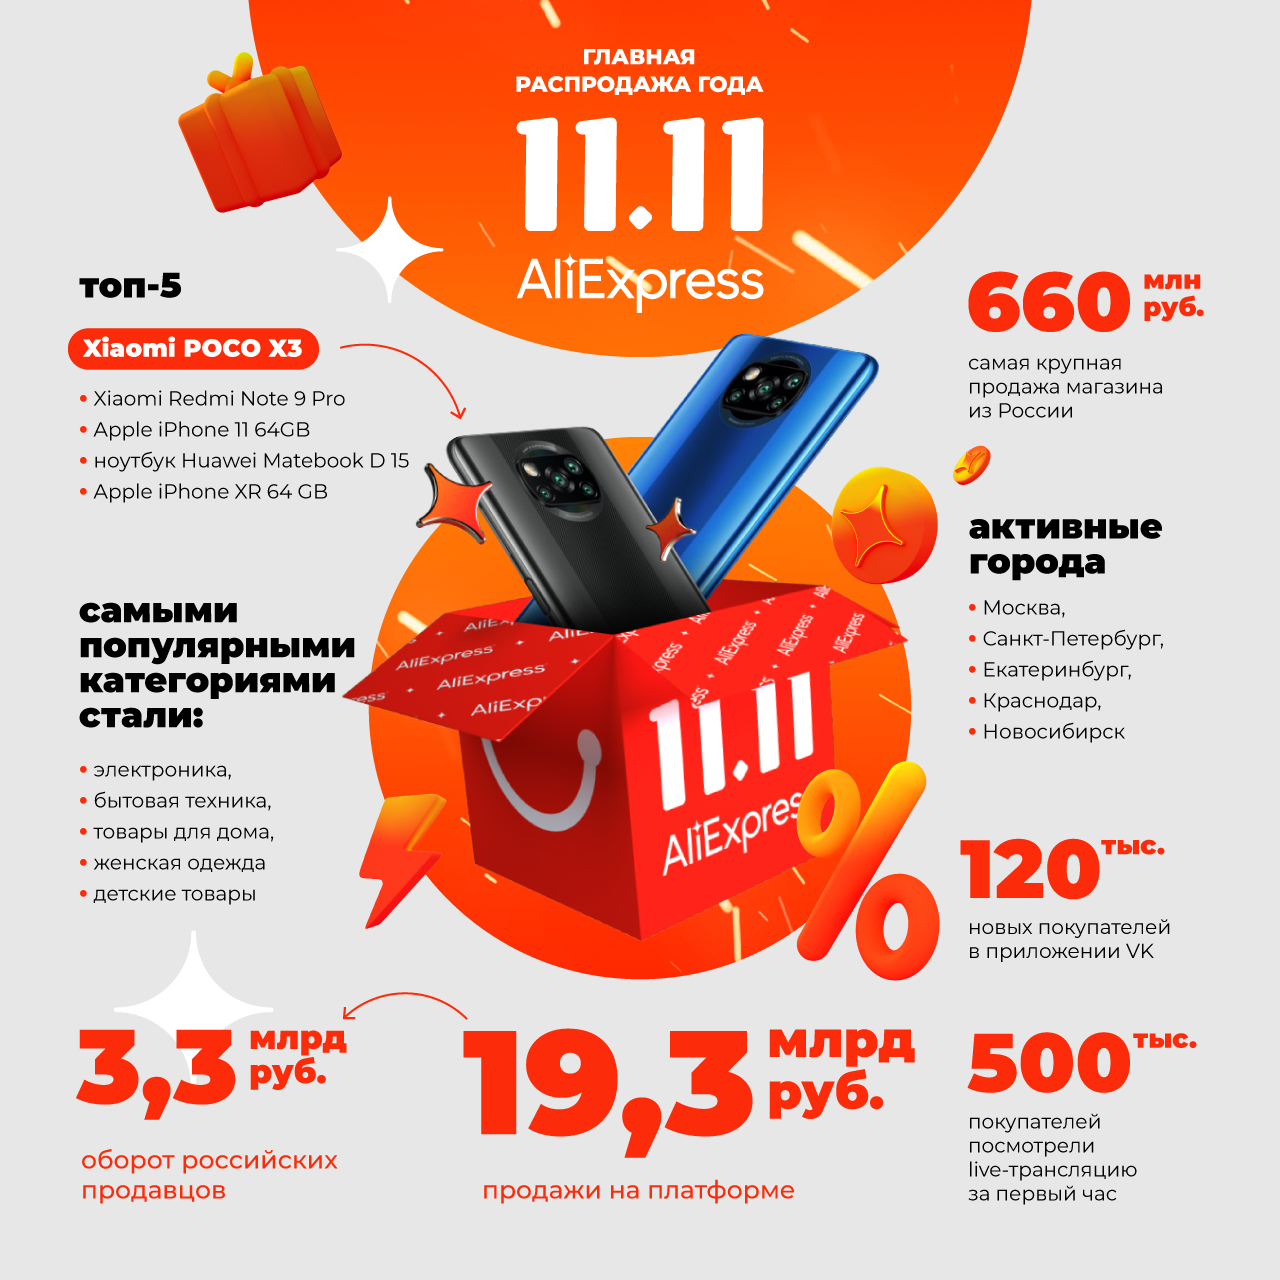 AliExpress Россия раскрывает финансовые показатели главной распродажи года